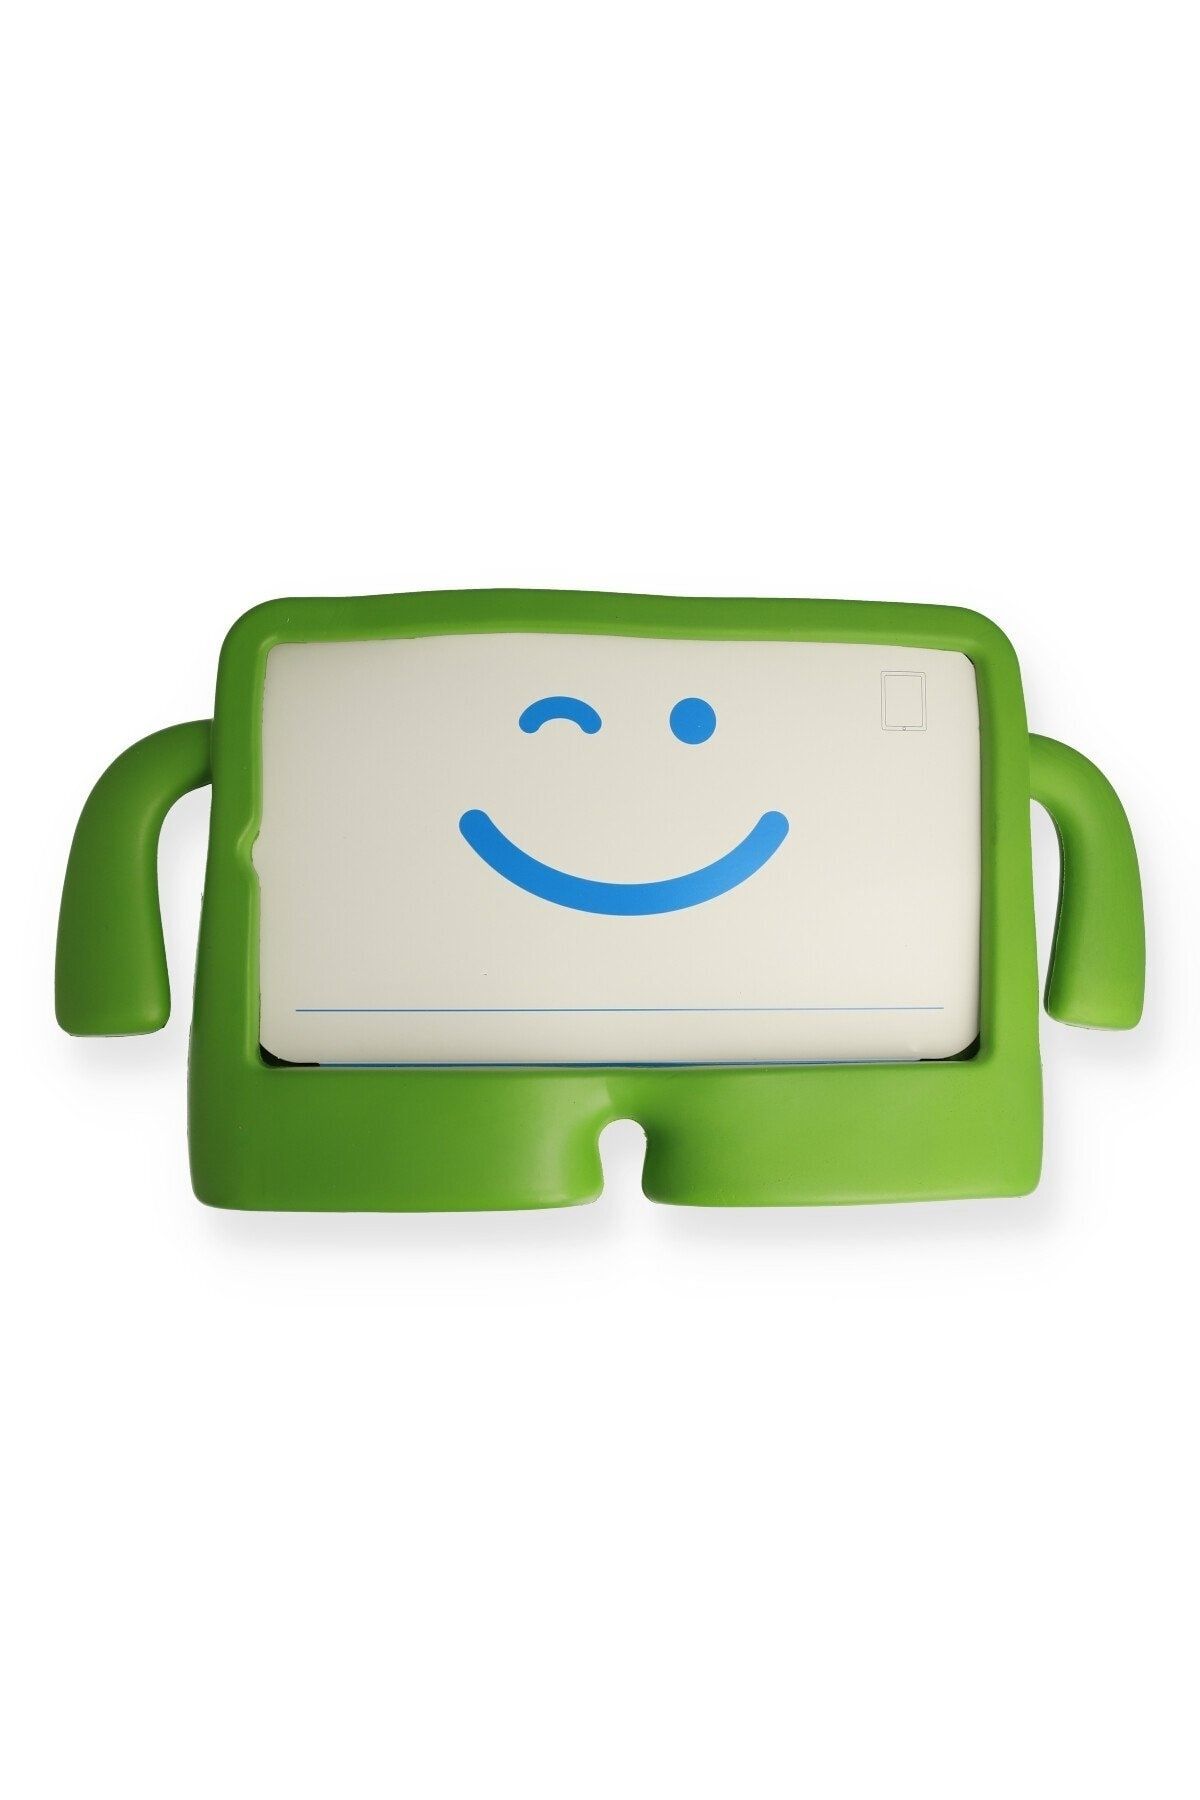 Bilişim Aksesuar Ipad Mini 5 Kılıf Karakter Tablet Silikon - Yeşil